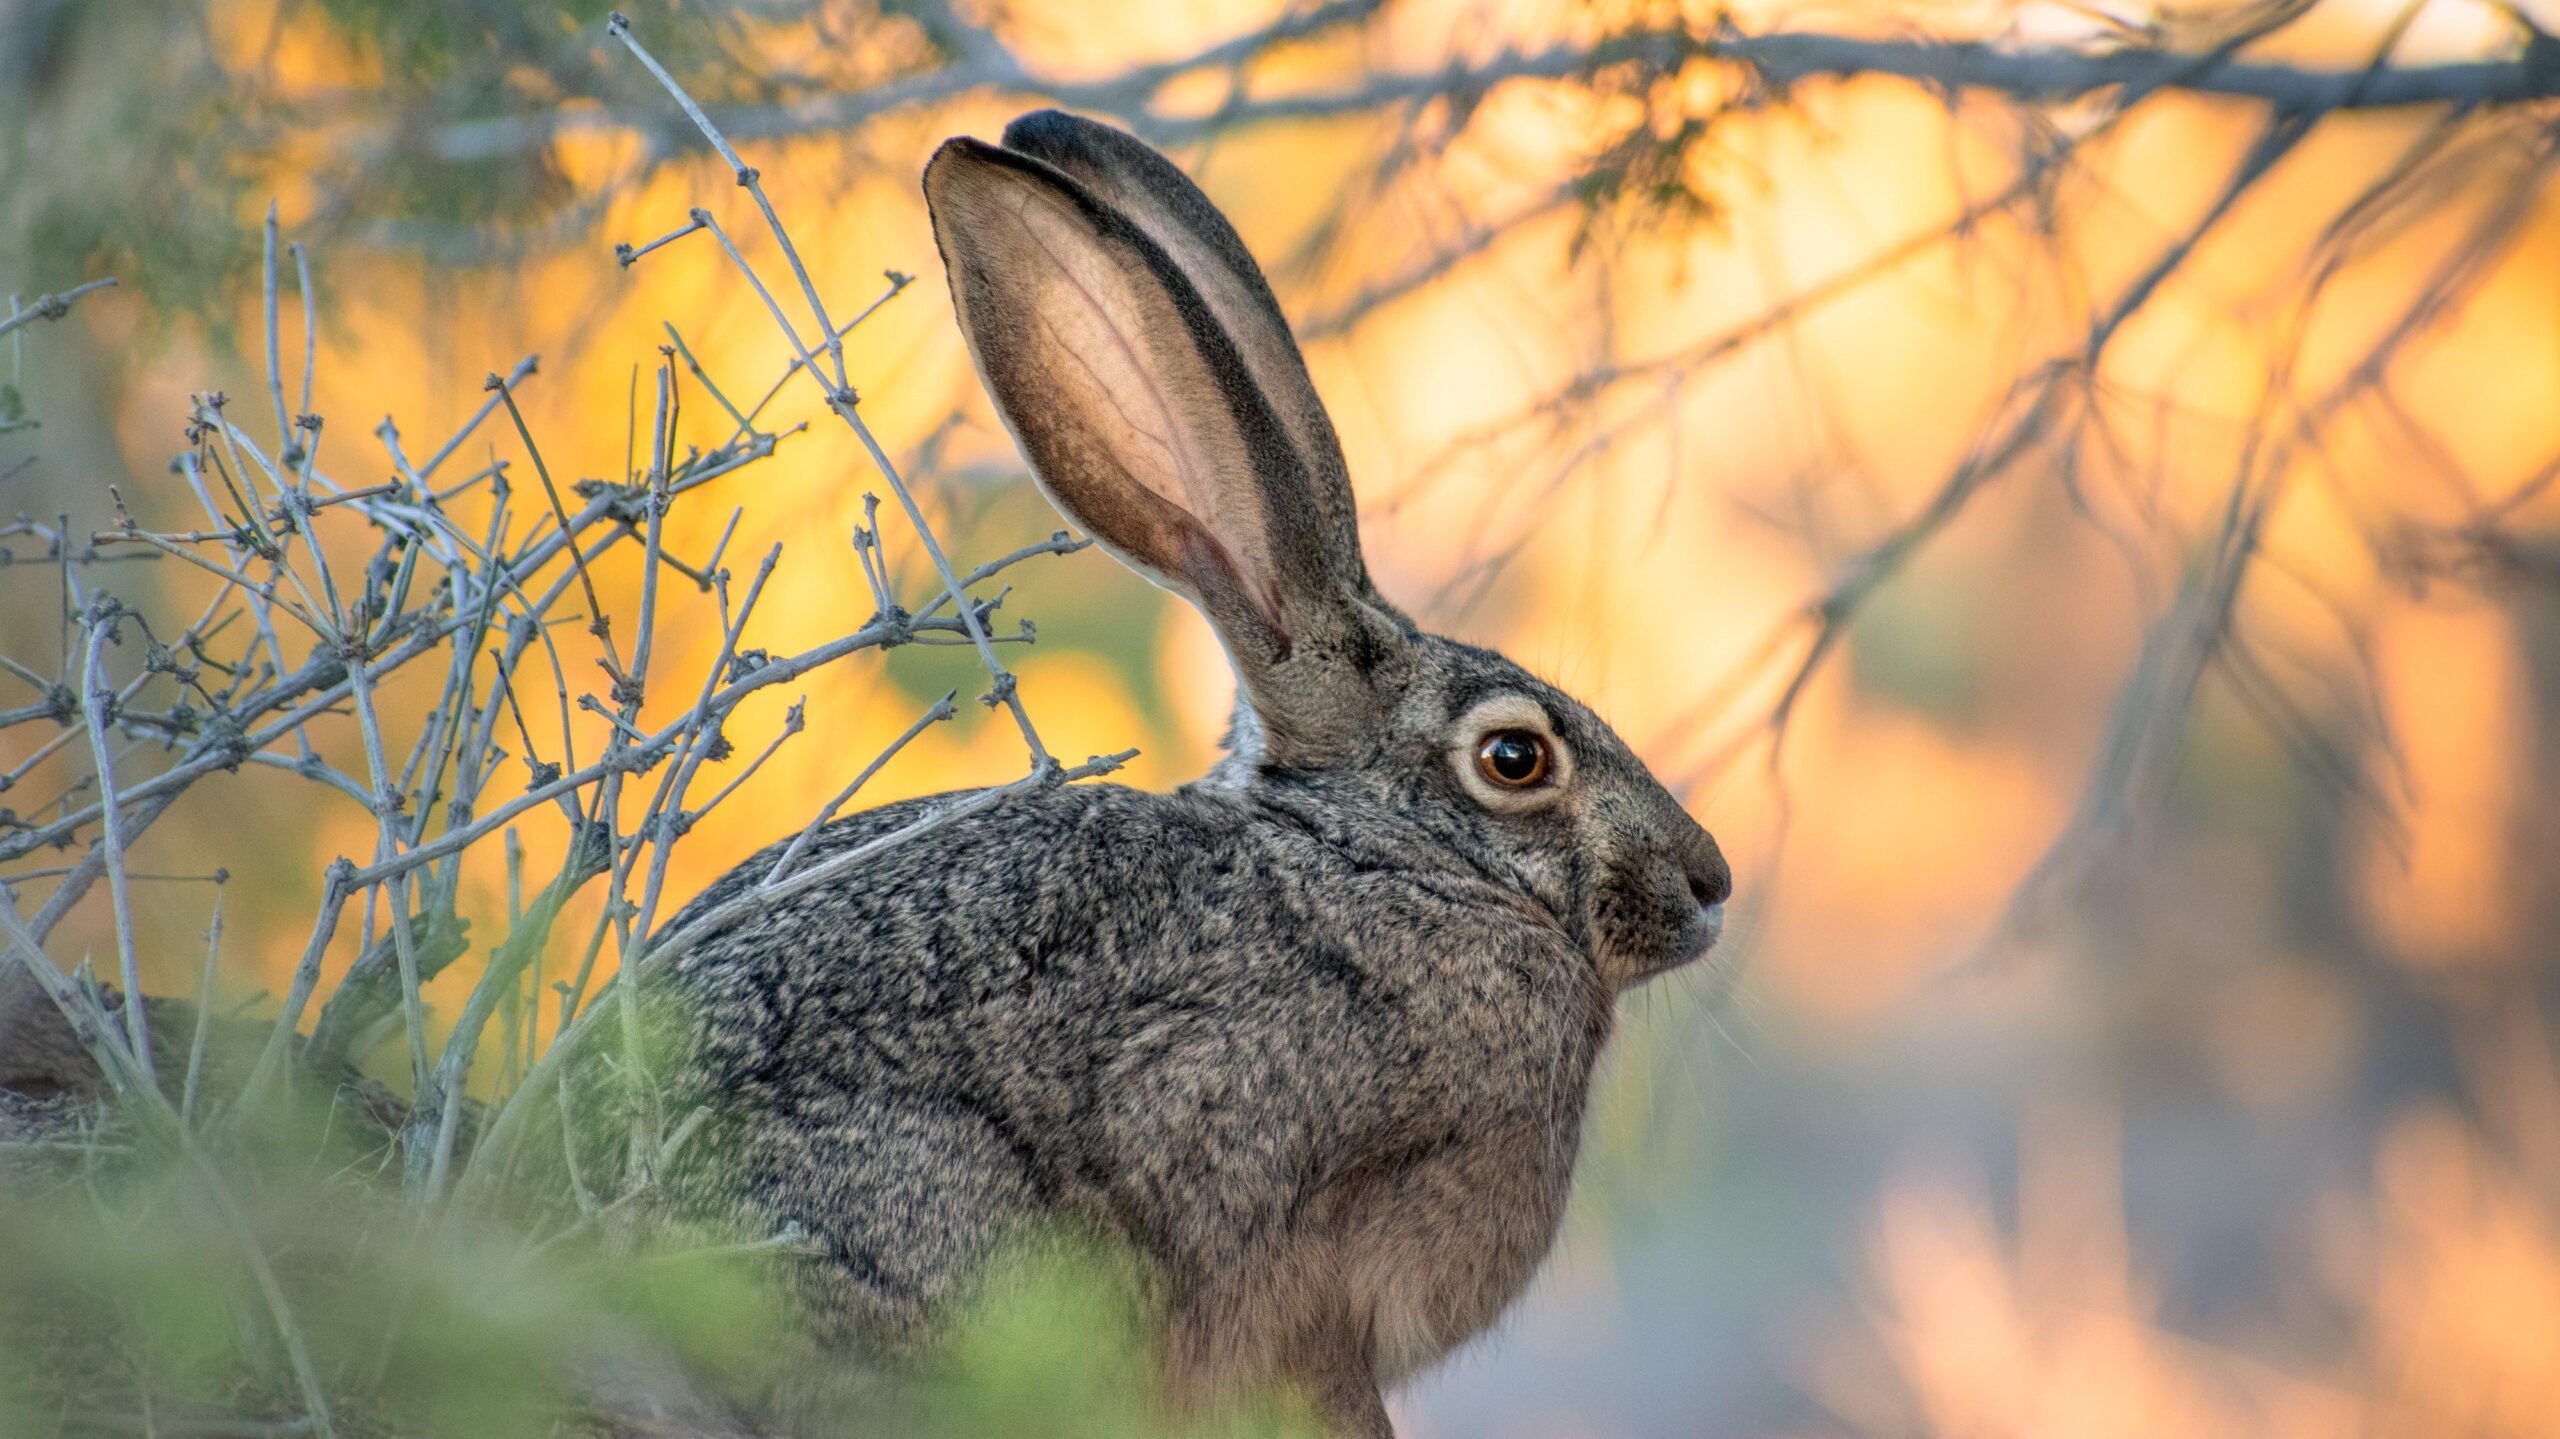 Black-tailed jackrabbit or American desert hare. Photo by Steve Harvey